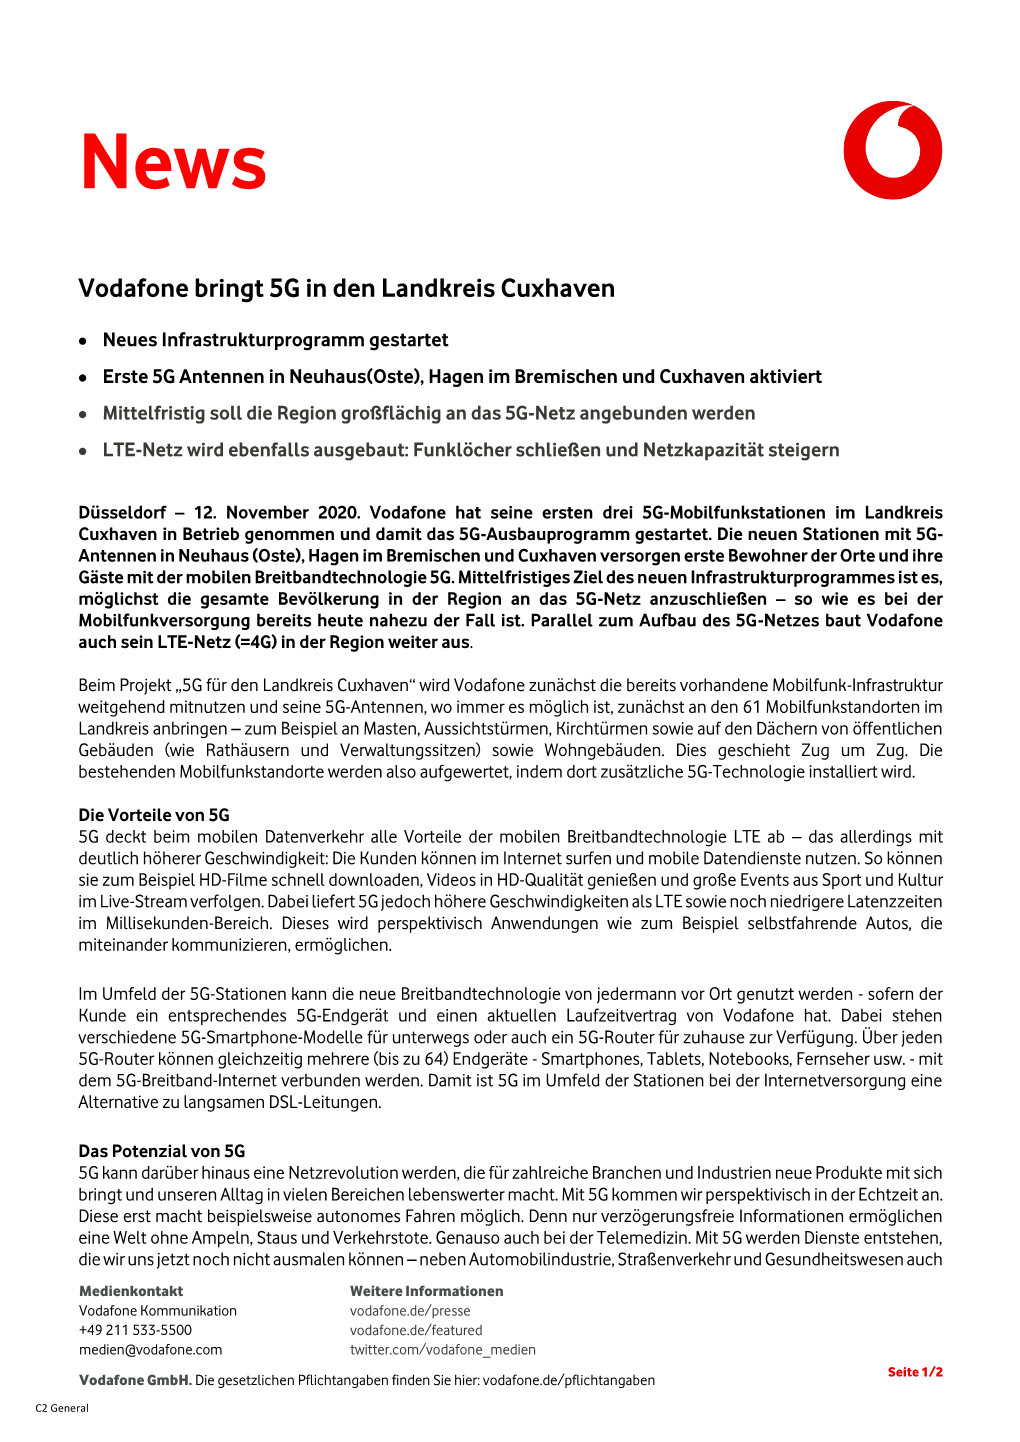 Vodafone Bringt 5G in Den Landkreis Cuxhaven